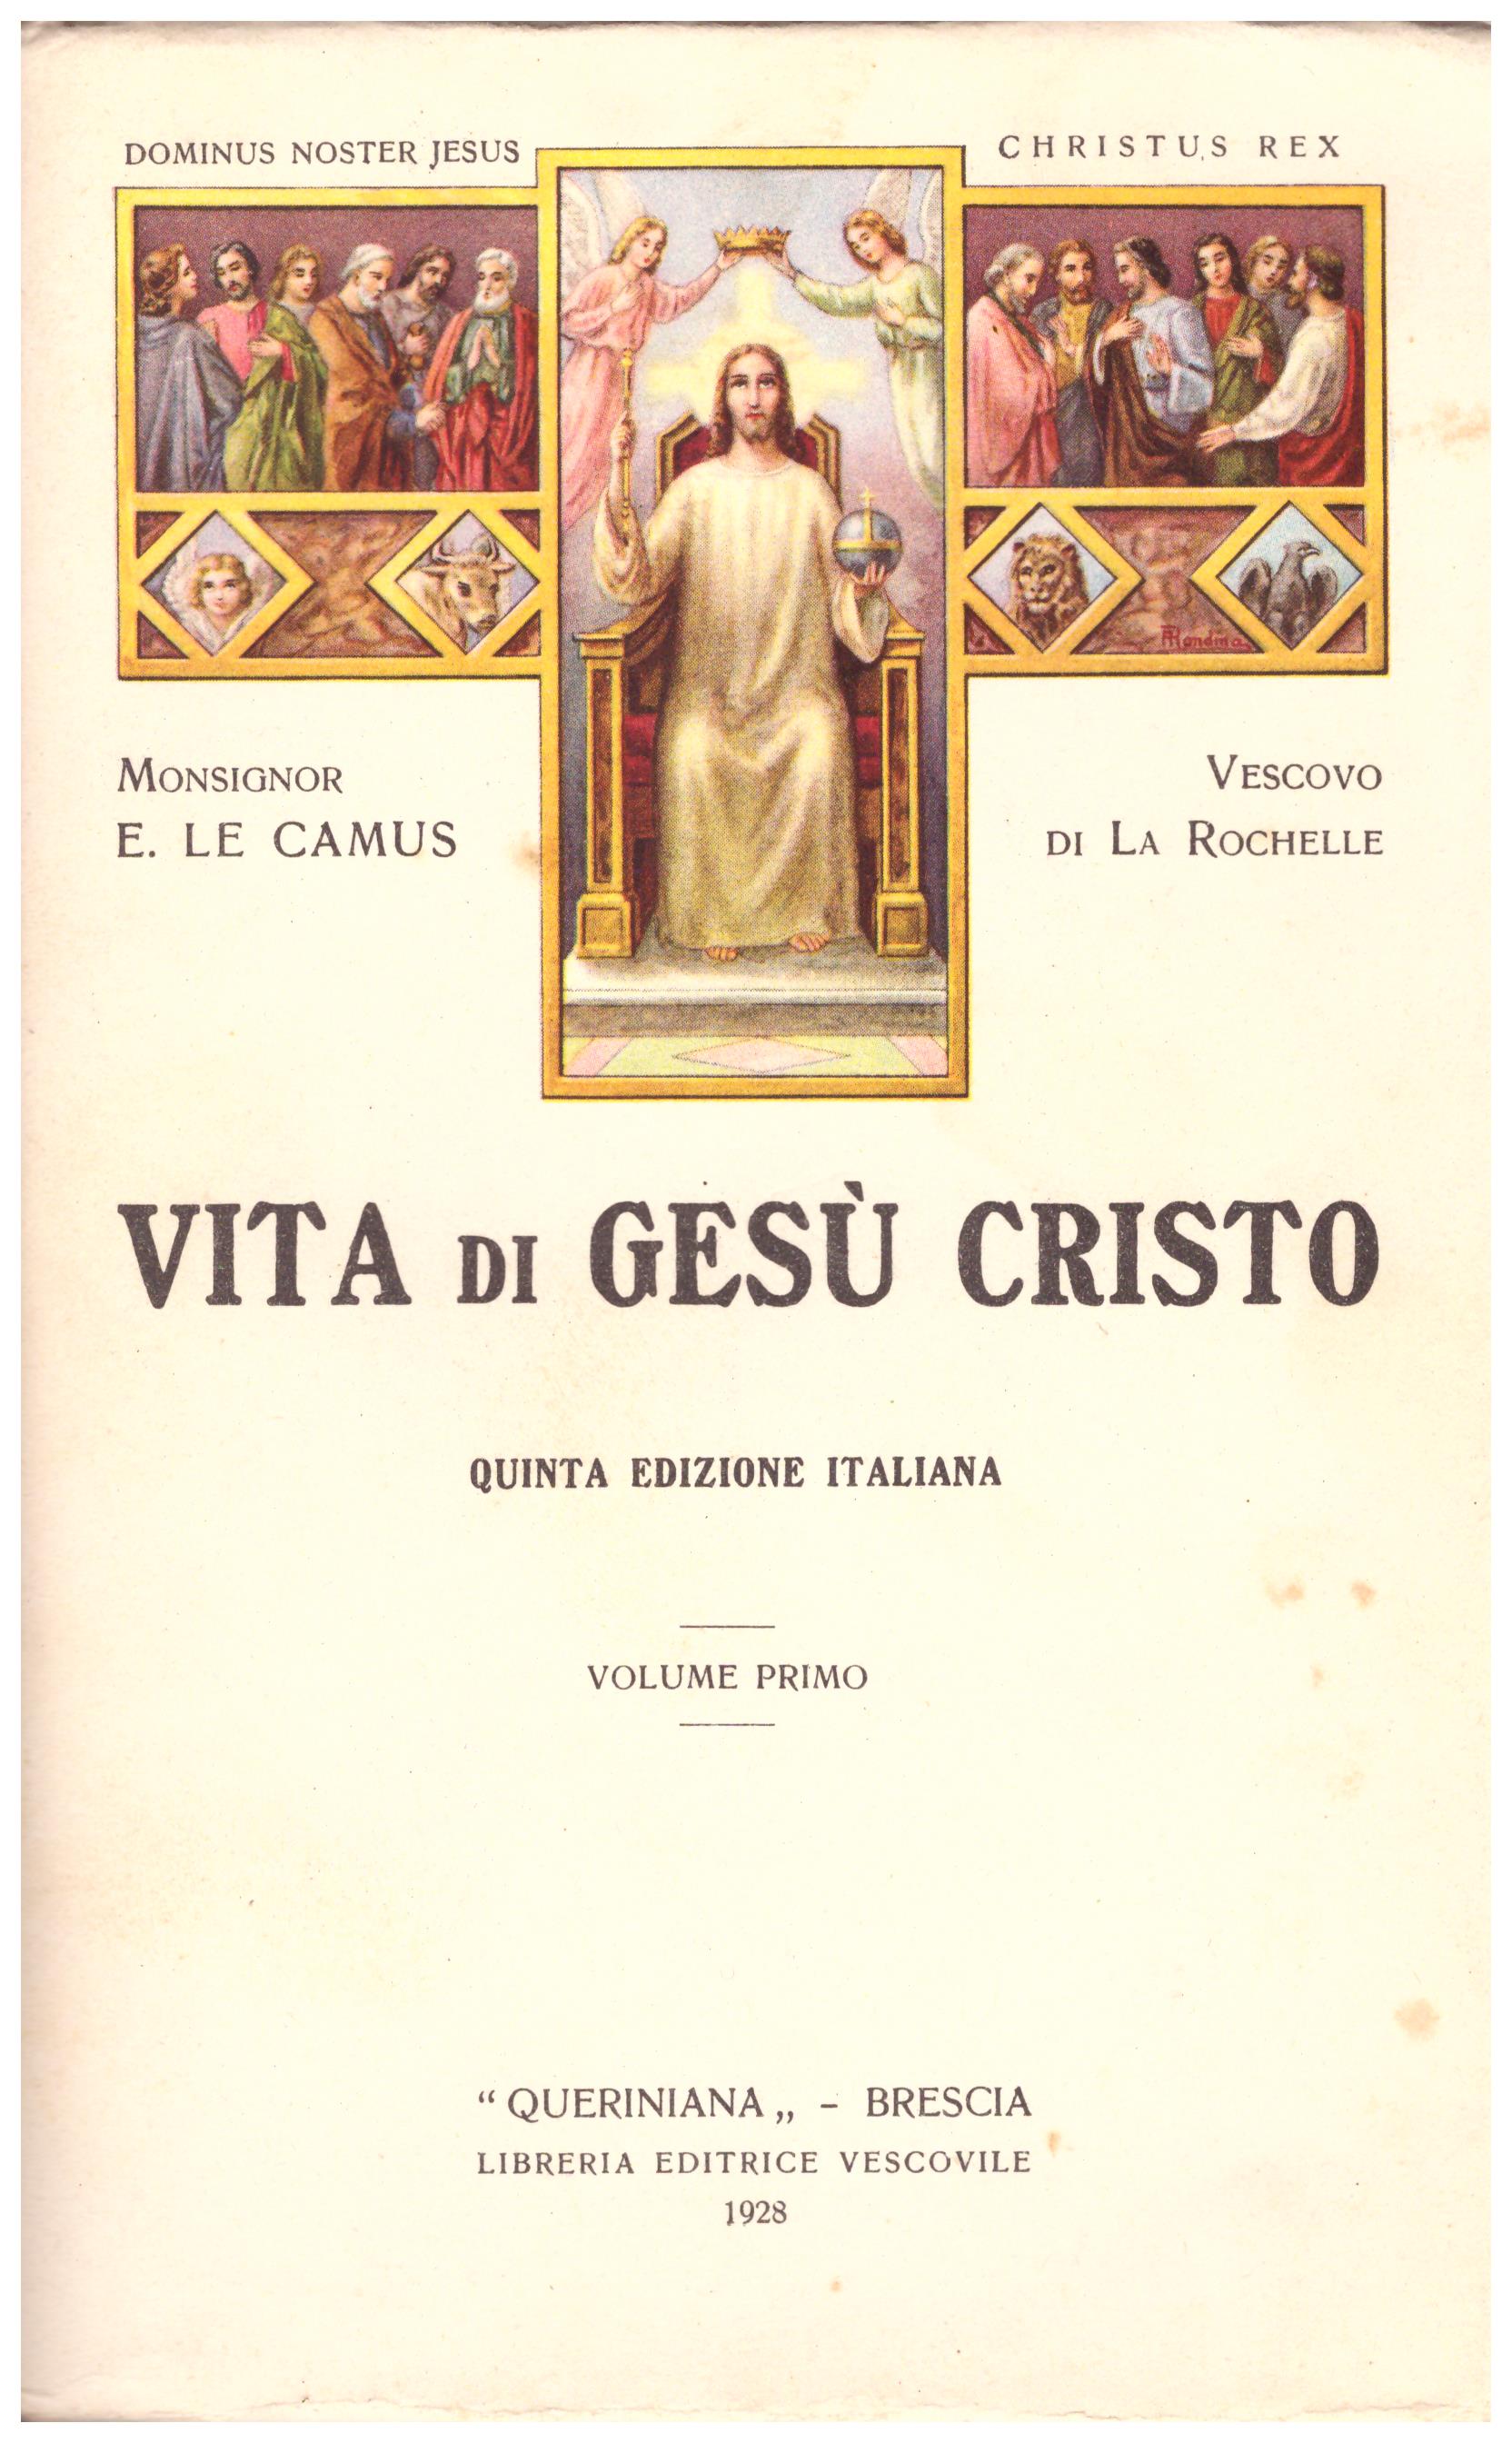 Titolo: Vita di Gesù Cristo, in 3 volumi Autore : Mons .E. Le. Camus Editore: queriniana brescia, libreria editrice vescovile, 1928